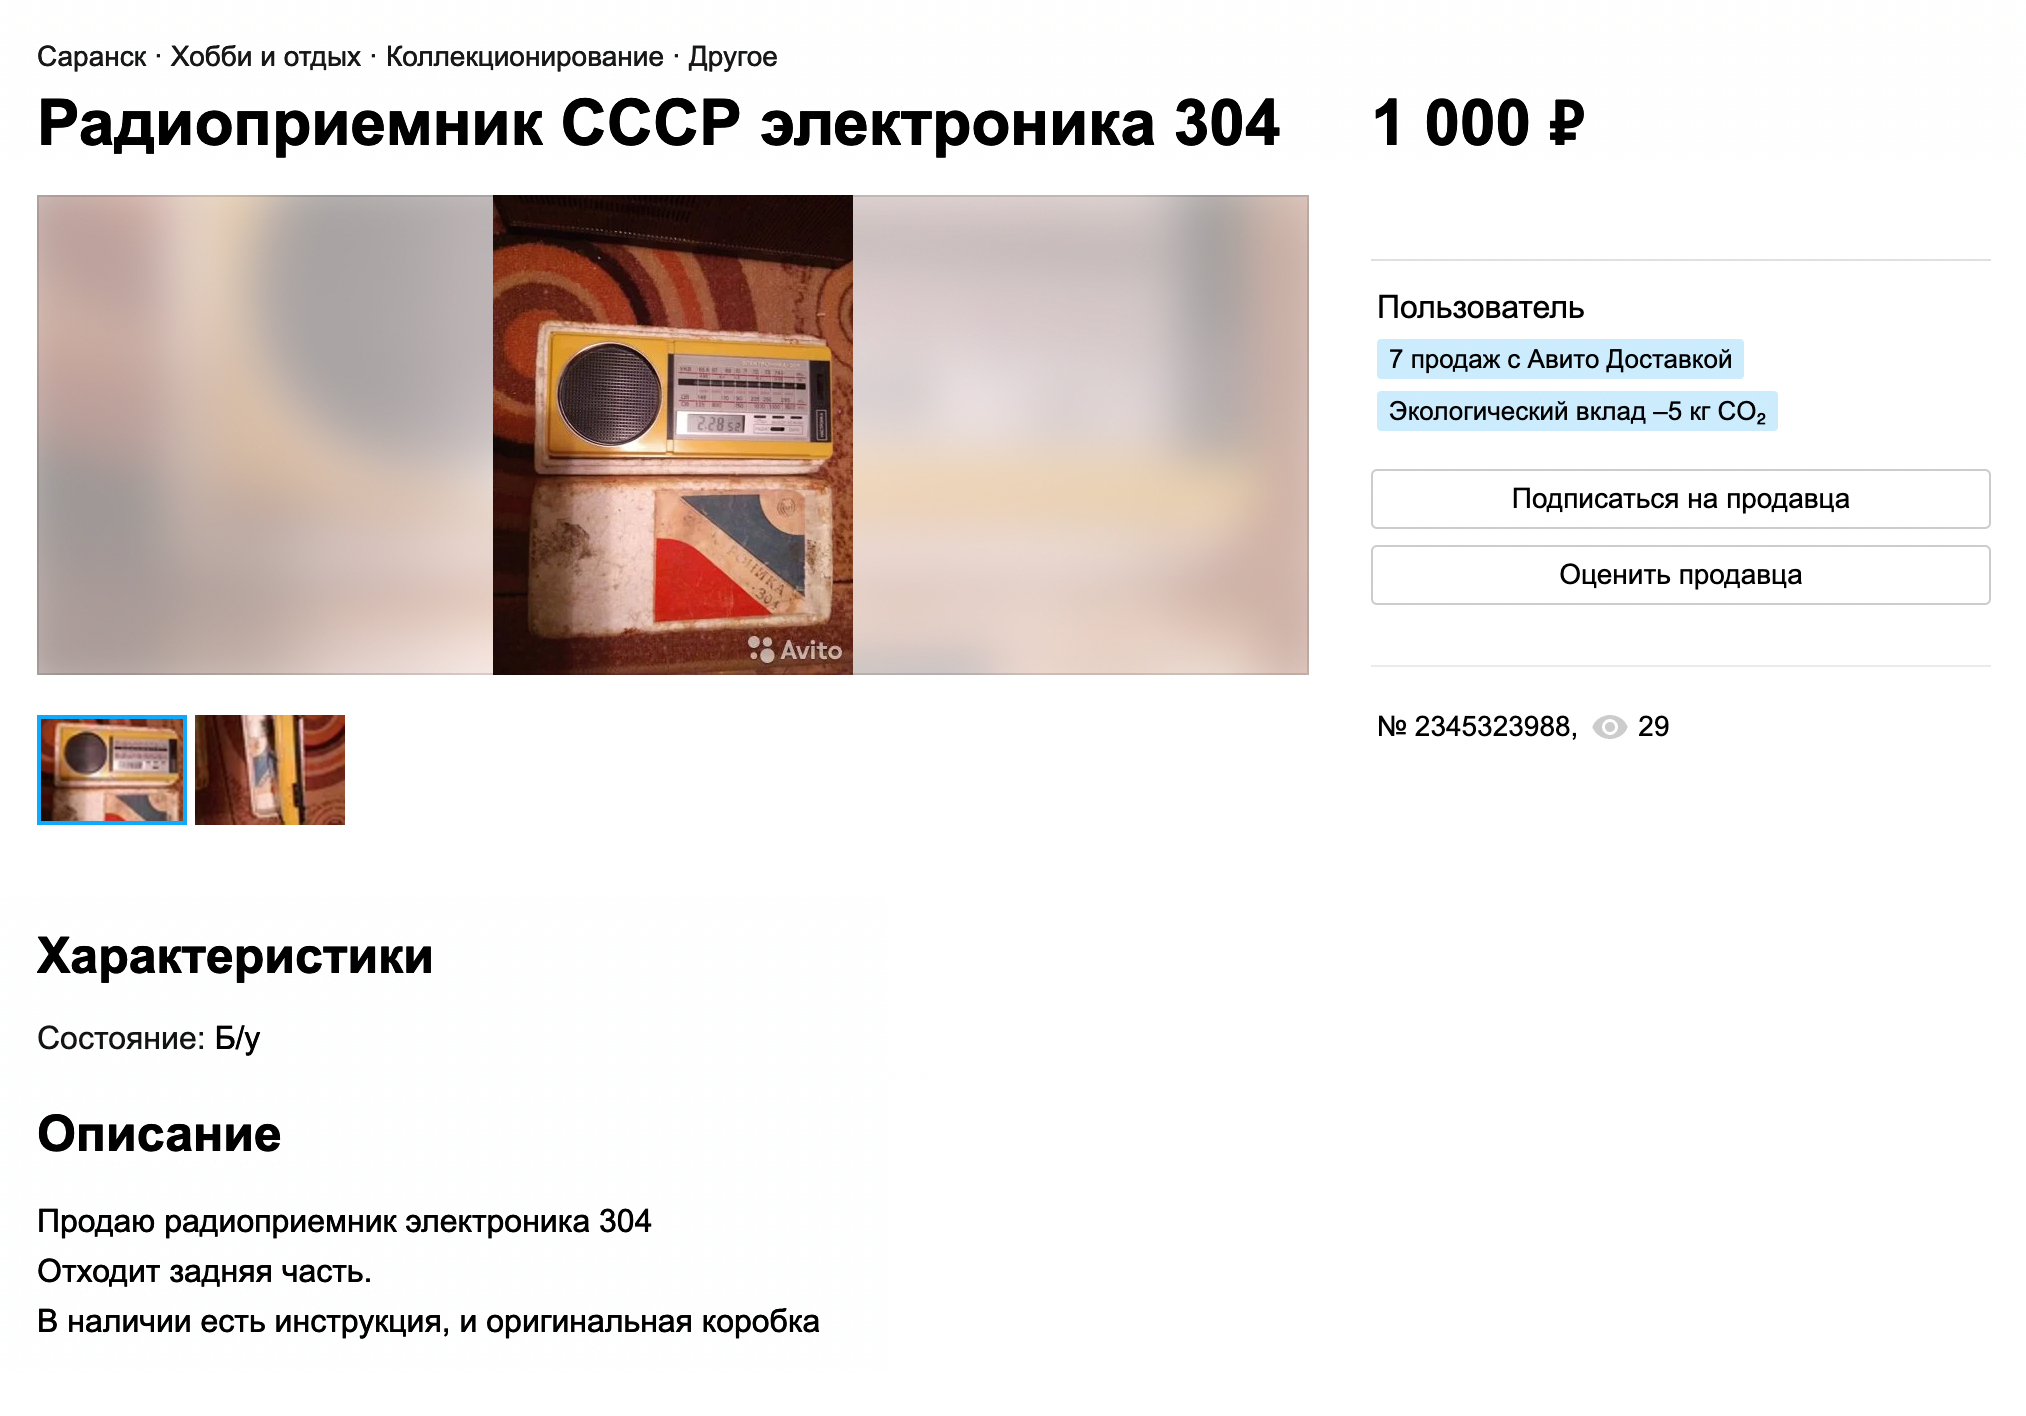 Небольшой неработающий желтый радиоприемник мы продали за 500 ₽ вместо 1000 ₽, которые просили за него изначально. Источник: avito.ru